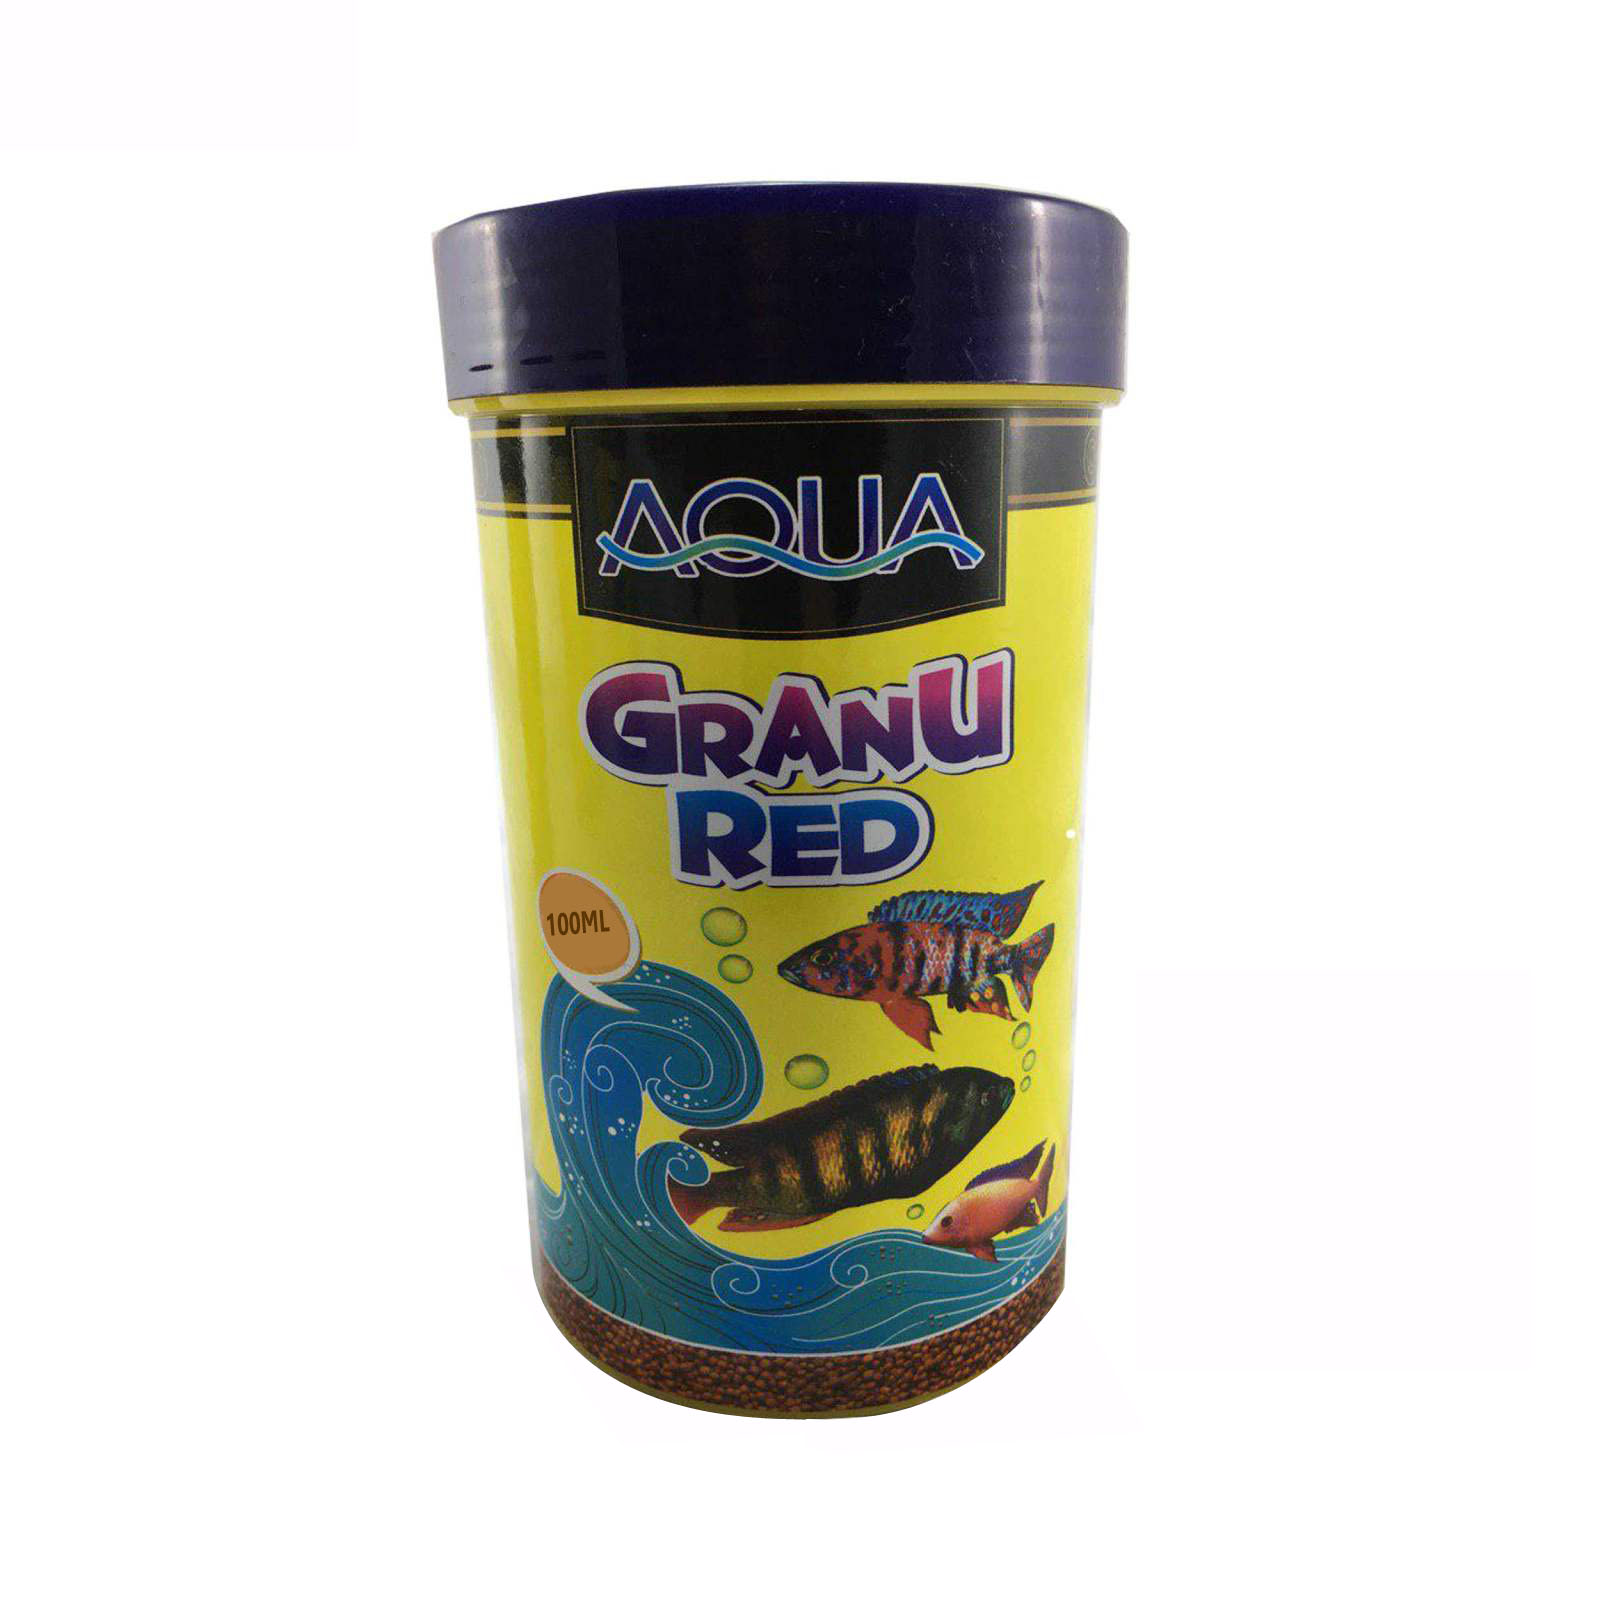 نقد و بررسی غذای ماهی آکوا مدل گرانو رد حجم 100 میلی لیتر توسط خریداران